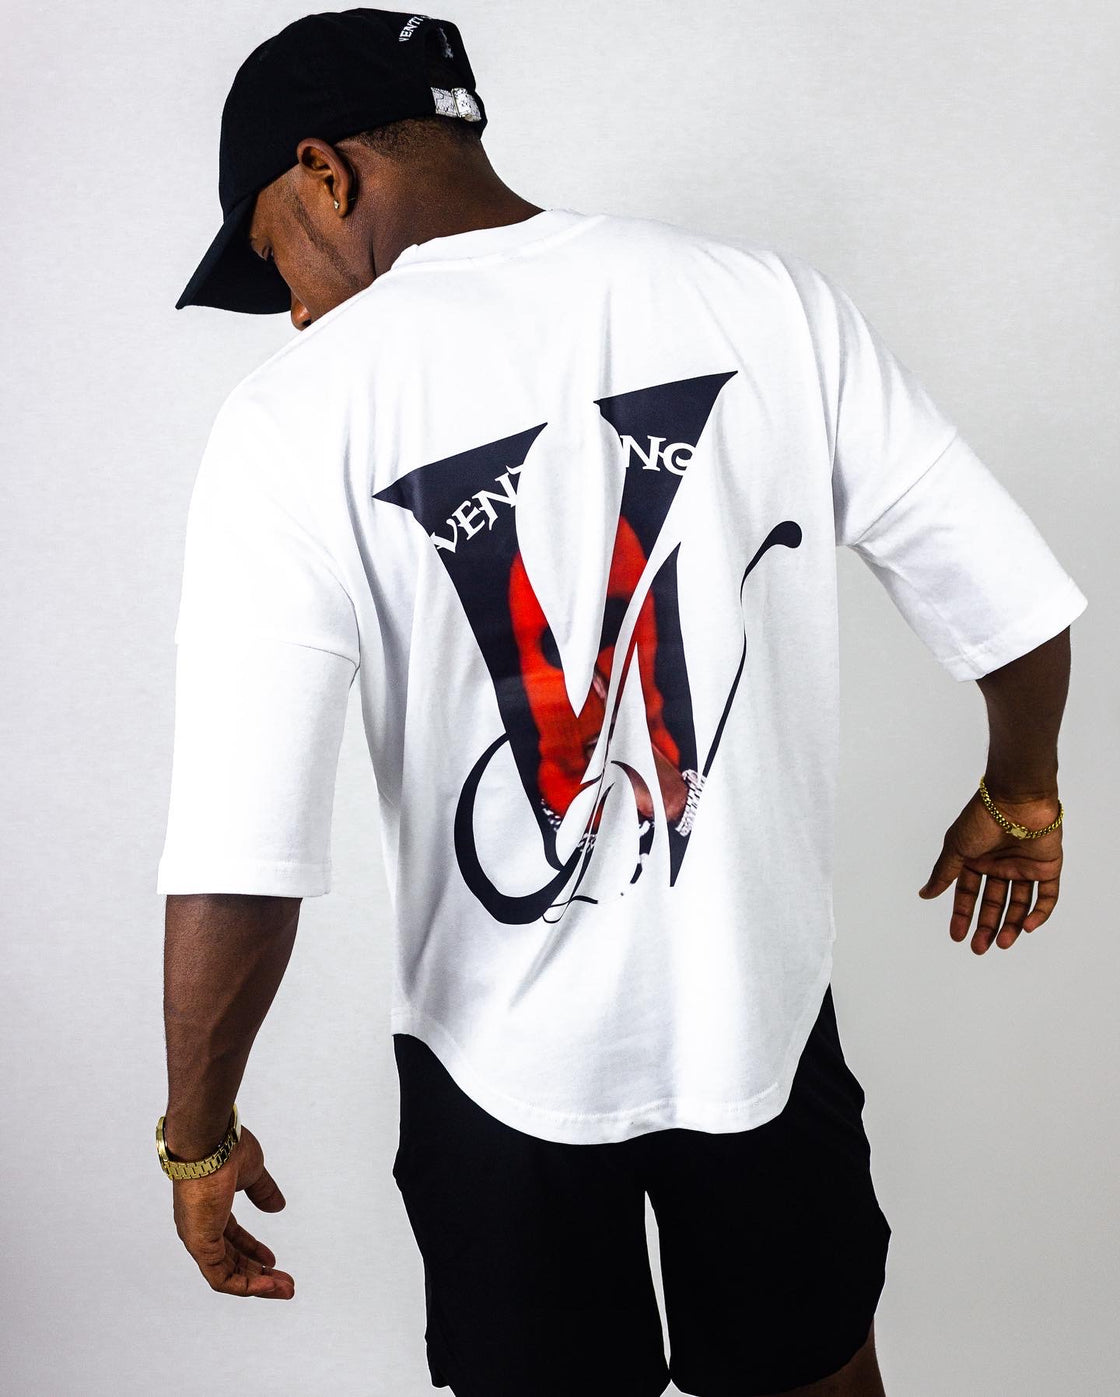 VG - T Shirt